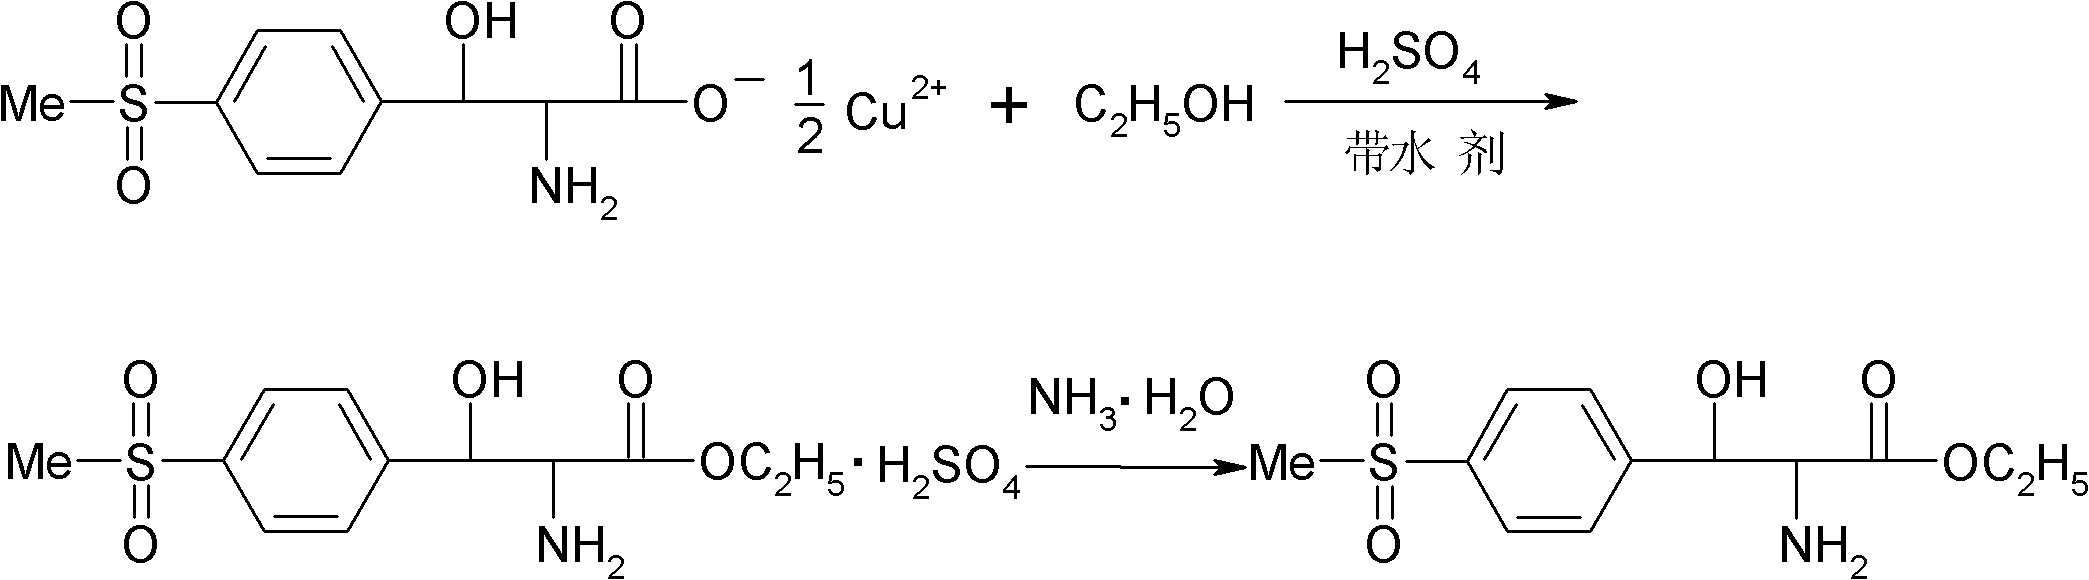 Preparation method of DL-p-methylsulfonylphenyl serine ethyl ester